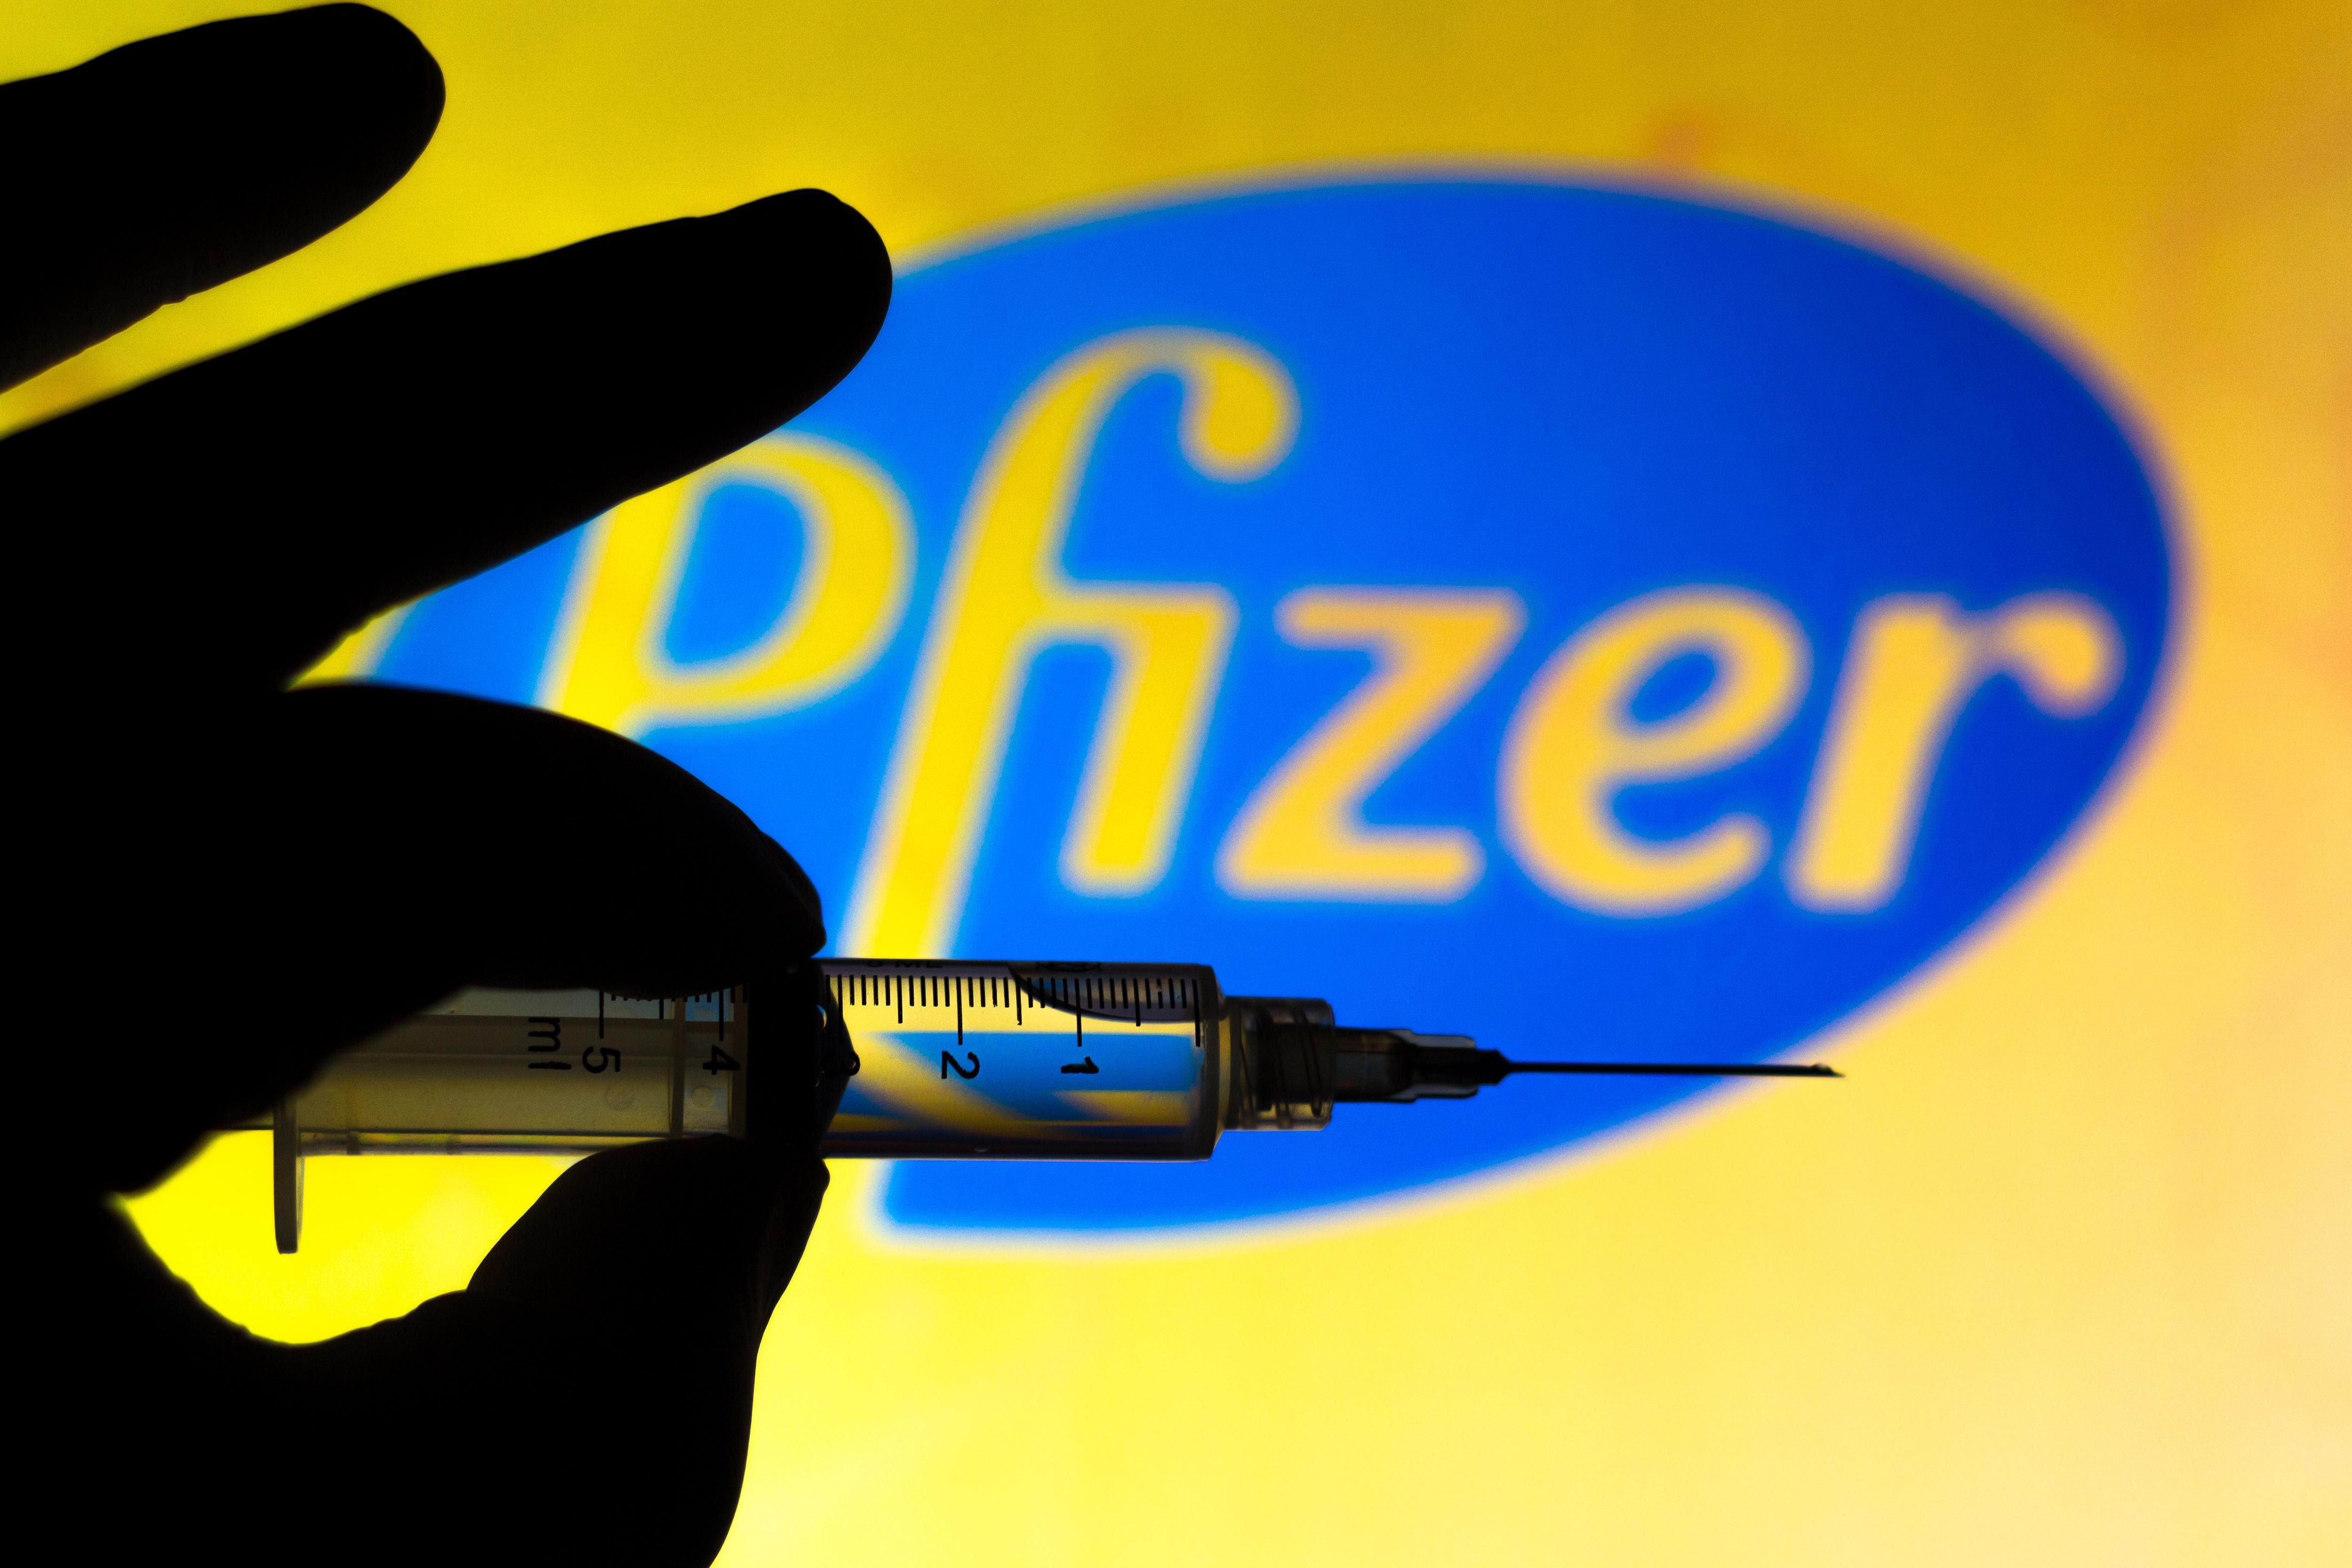 МОЗ утилізує 34 тисячі вакцин Pfizer: причина не термін придатності - Новини Здоров’я